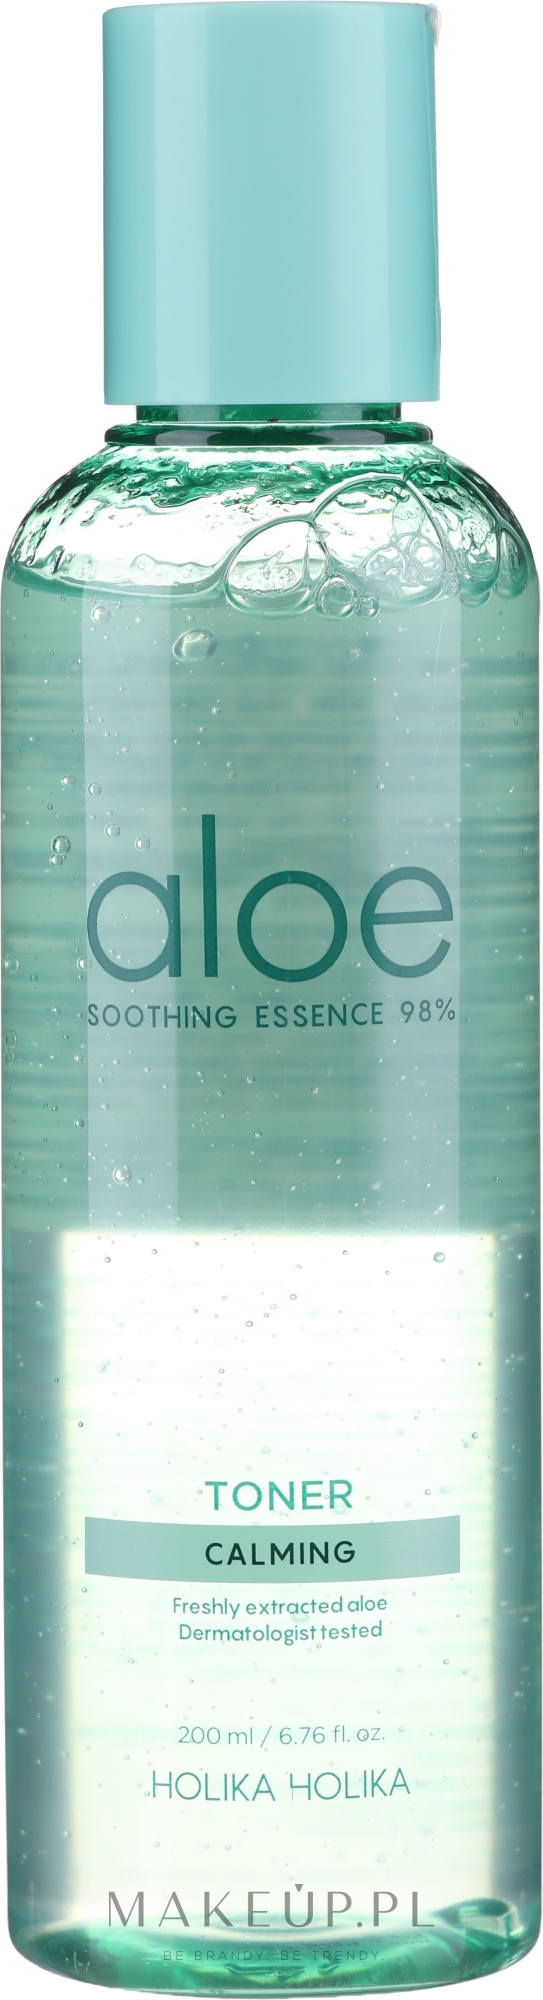 Kojący tonik do twarzy - Holika Holika Aloe Soothing Essence 98% Toner Calming — Zdjęcie 200 ml